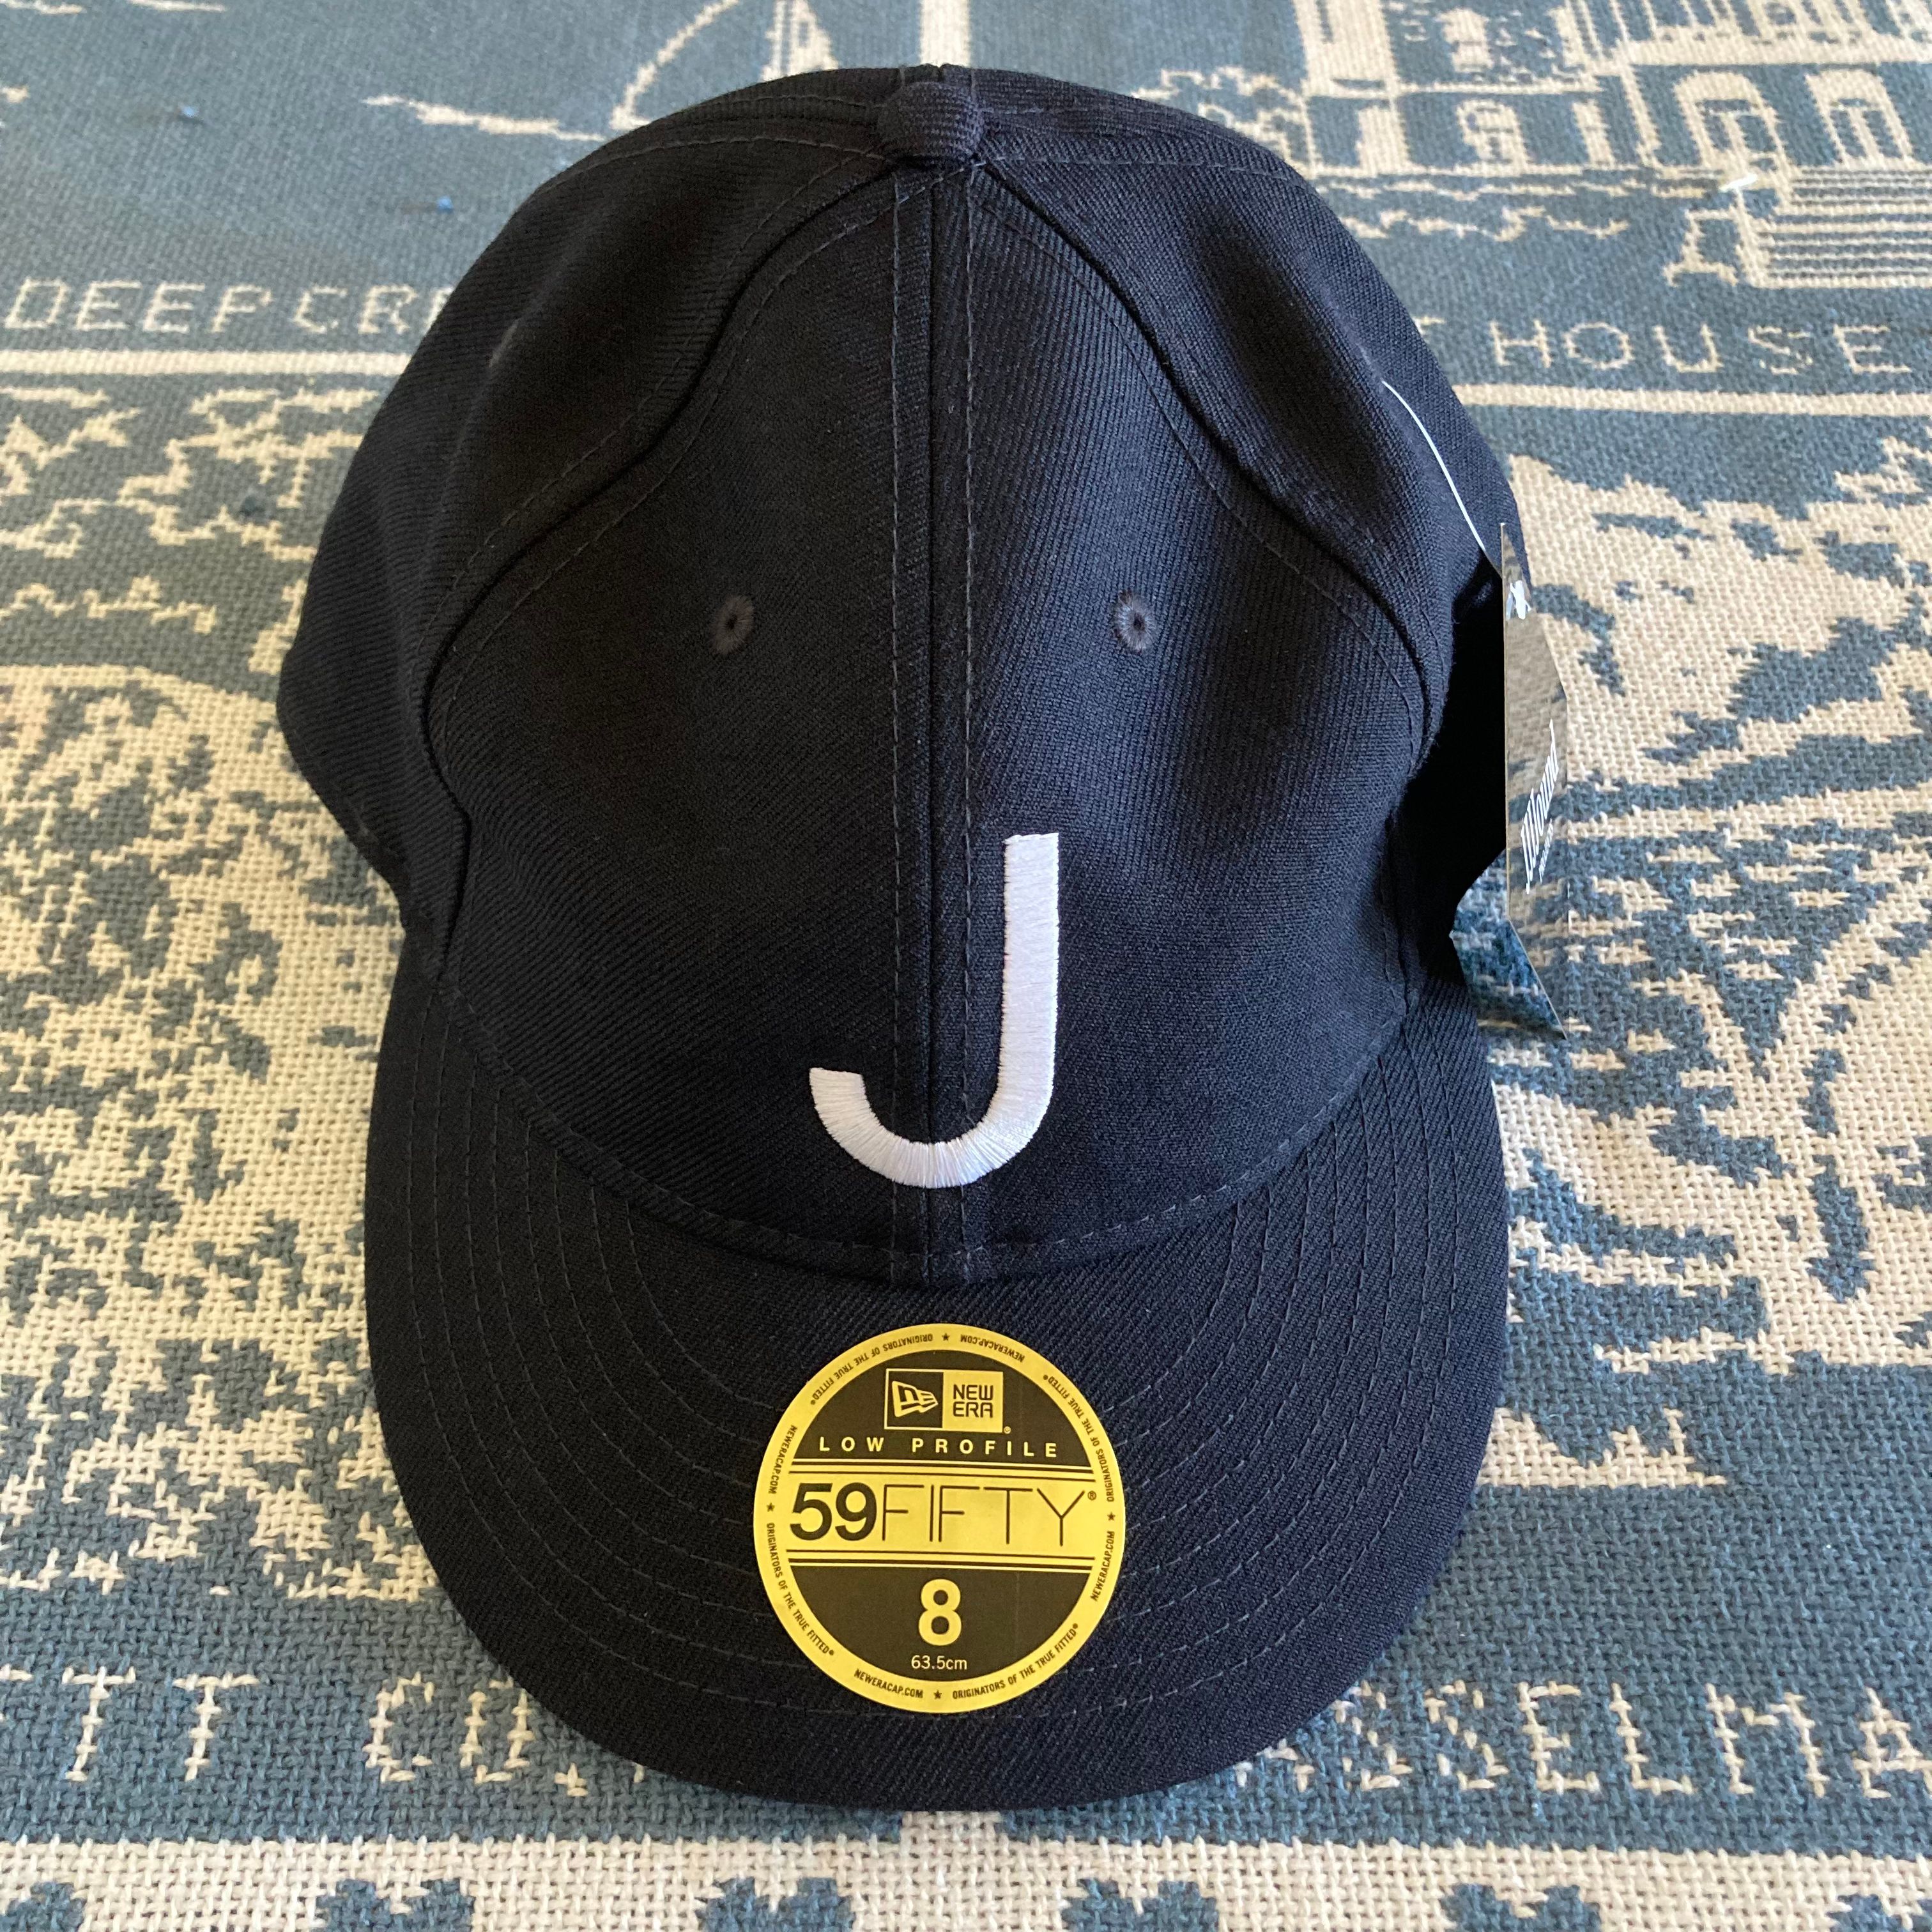 59FIFTY Low Profile New Era Cap - Black – JJJJound - idcar.com.ar